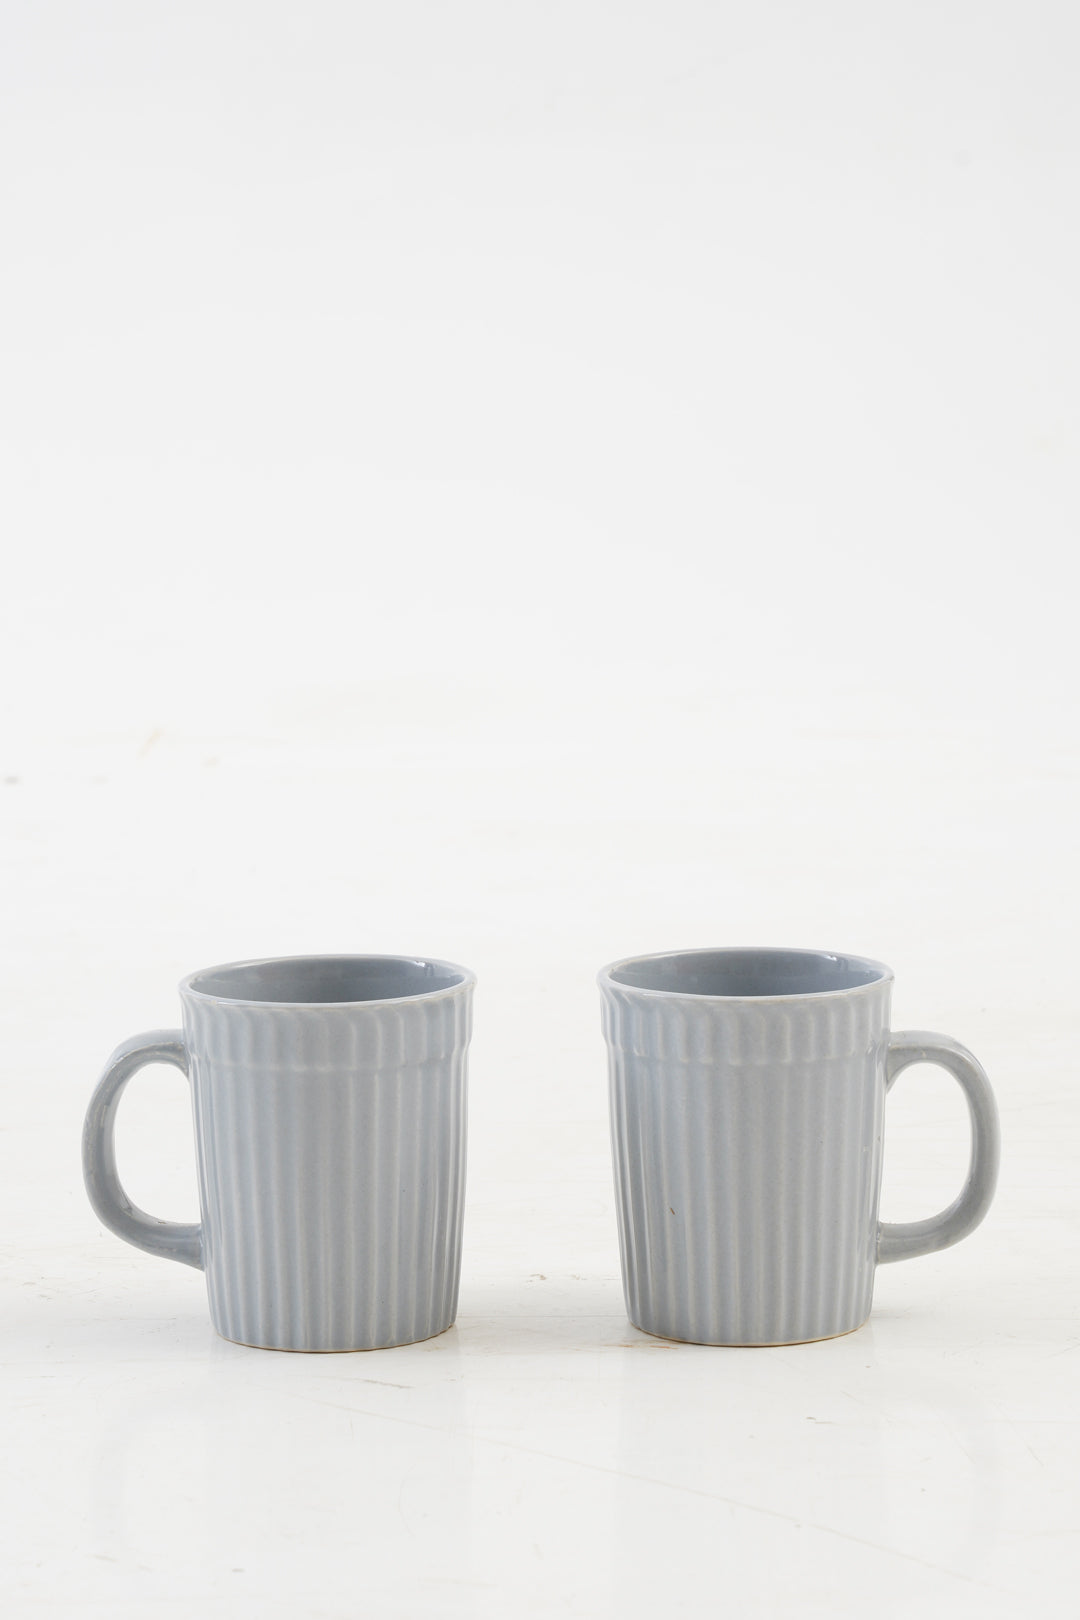 Liny Sky Blue Coffee Mugs set of 2